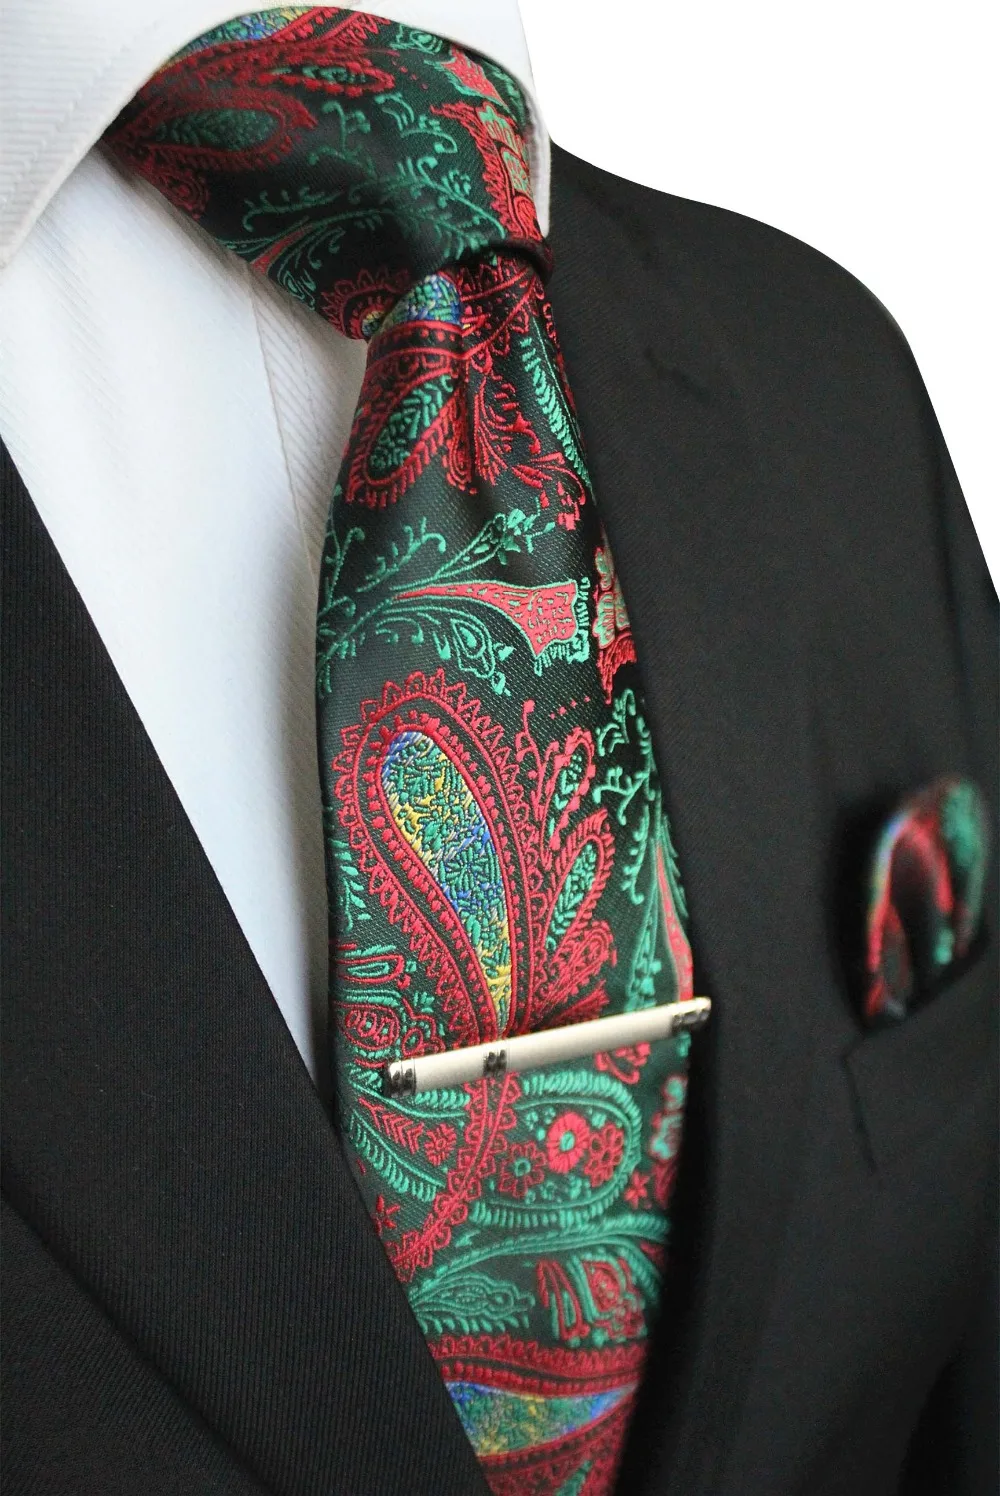 JEMYGINS шелковый галстук& Карманный квадратный& зажим для галстука набор галстук ручной работы Высокое качество для модных мужчин вечерние костюм для свадьбы